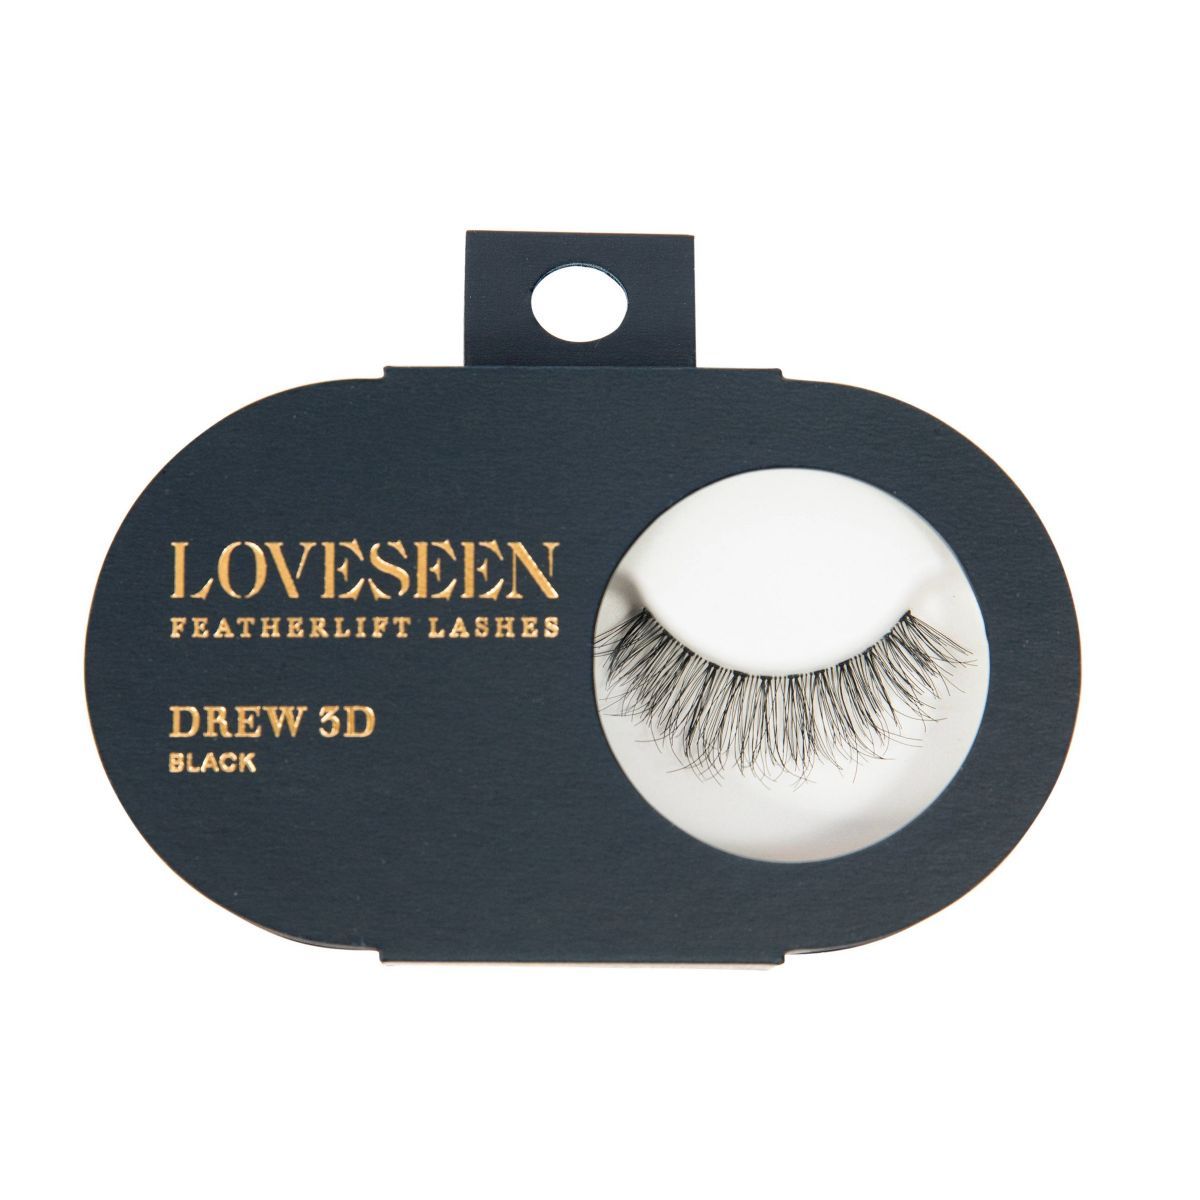 LoveSeen Featherlift DREW 3D False Eyelashes - Black - 1 pair | Target